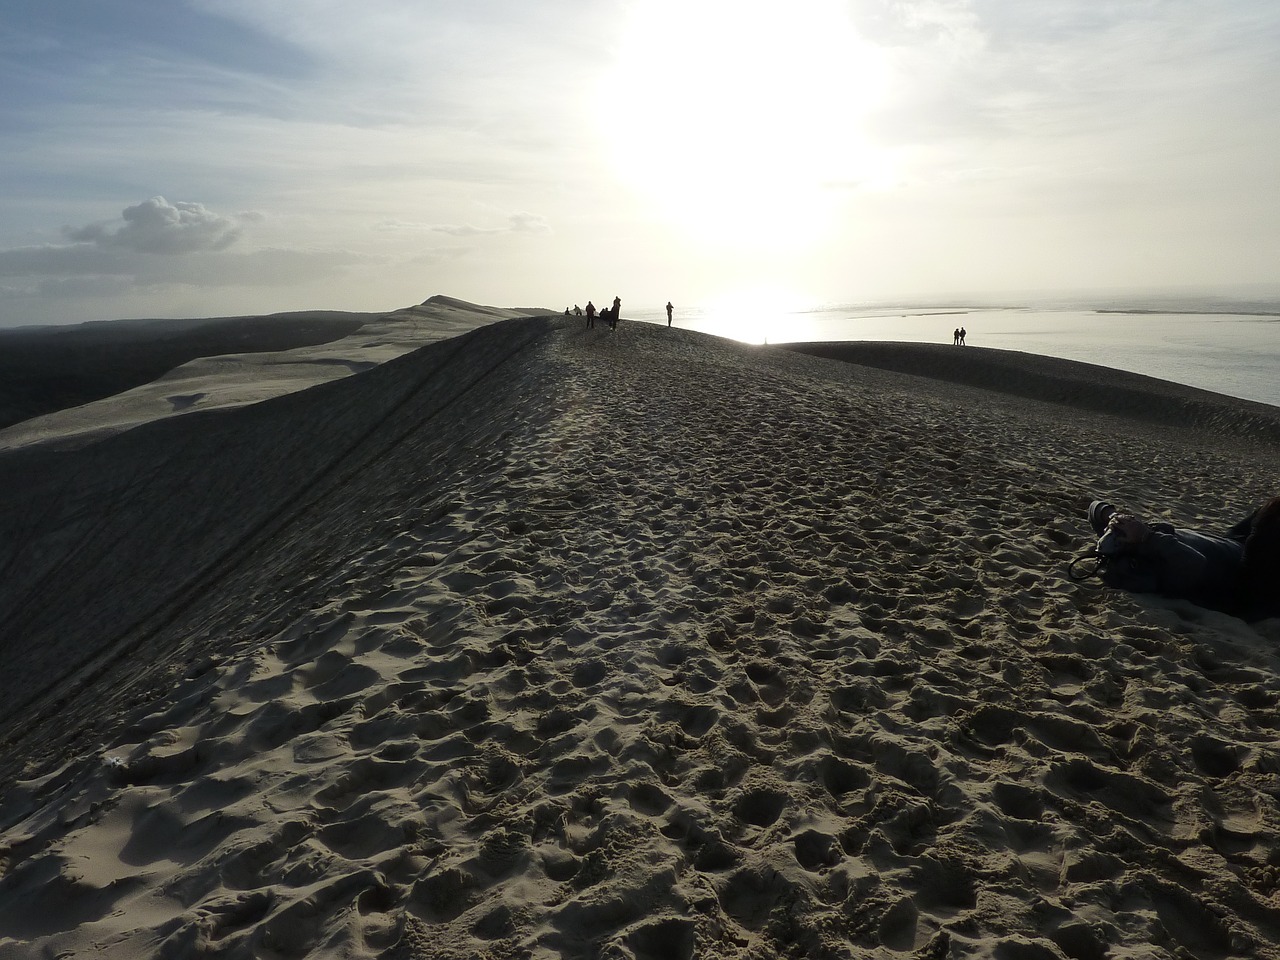 dune of pilat dune sand free photo